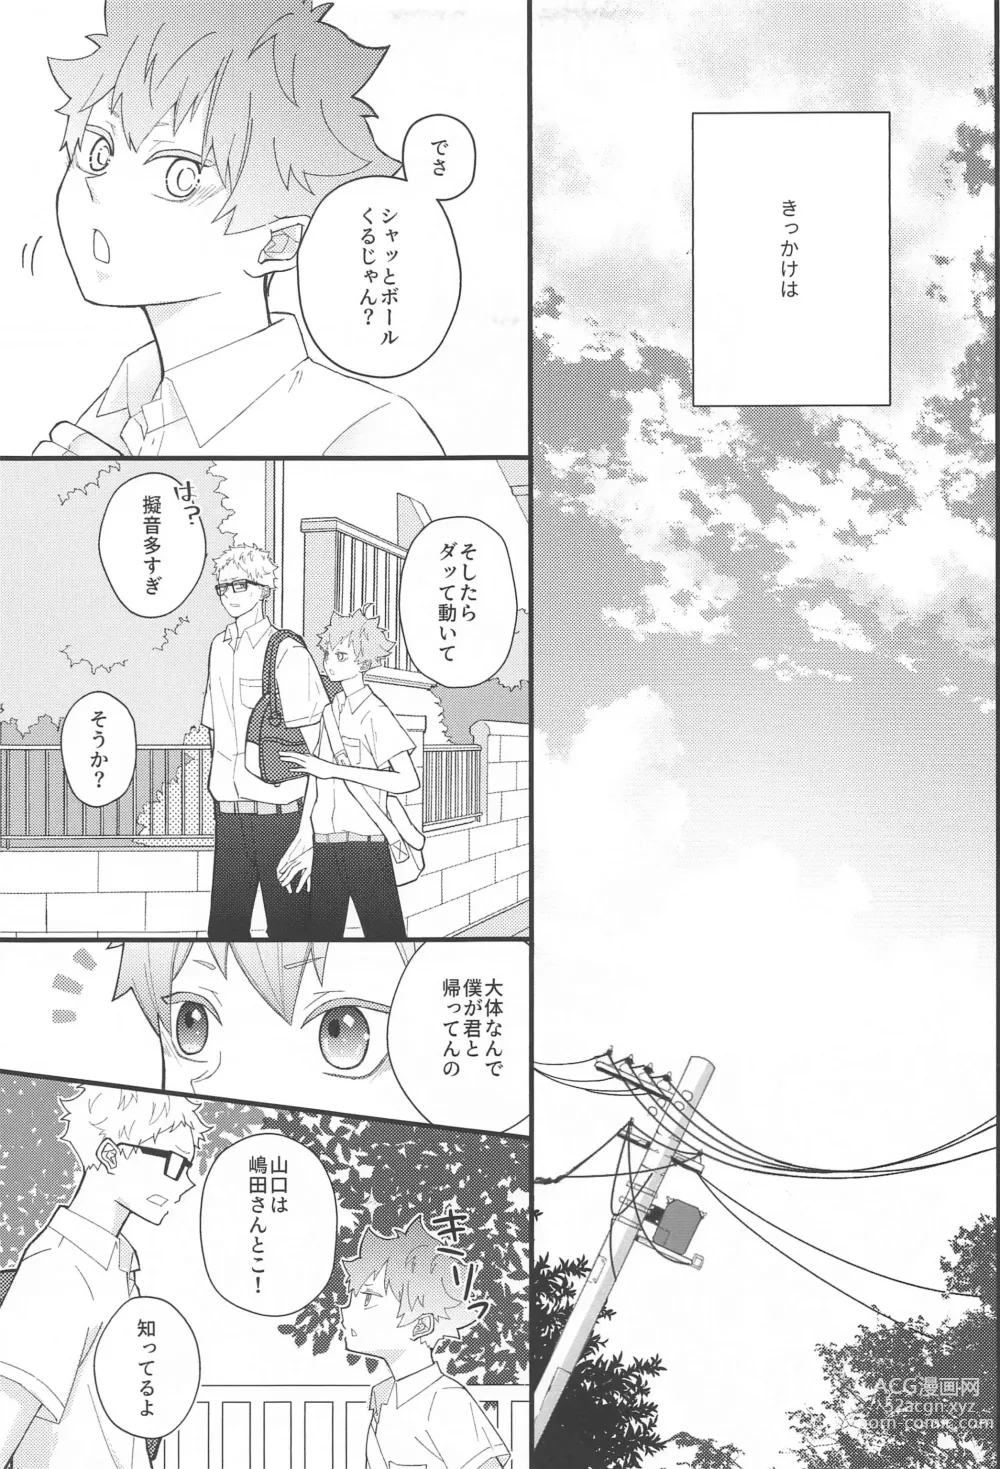 Page 6 of doujinshi Kokuhaku Dekinai Kojirase  Alpha to Sukitte Iitai  Donkan Omega